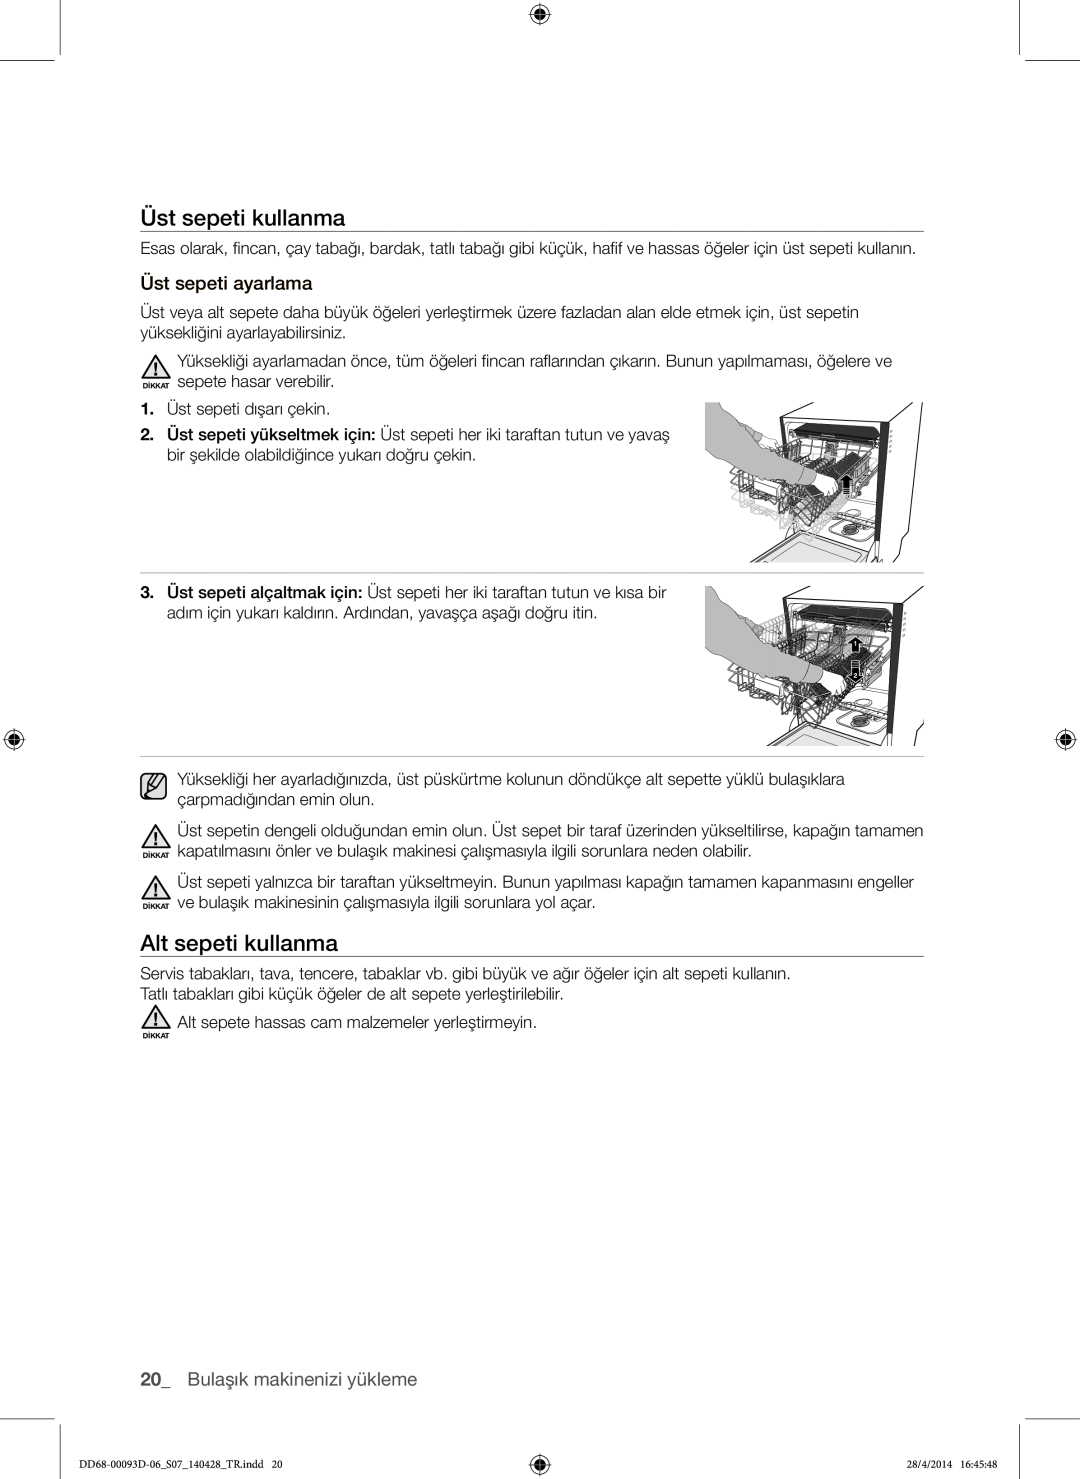 Samsung DW-FG520W/XTR manual Üst sepeti kullanma, Alt sepeti kullanma, Üst sepeti ayarlama, Bulaşık makinenizi yükleme 